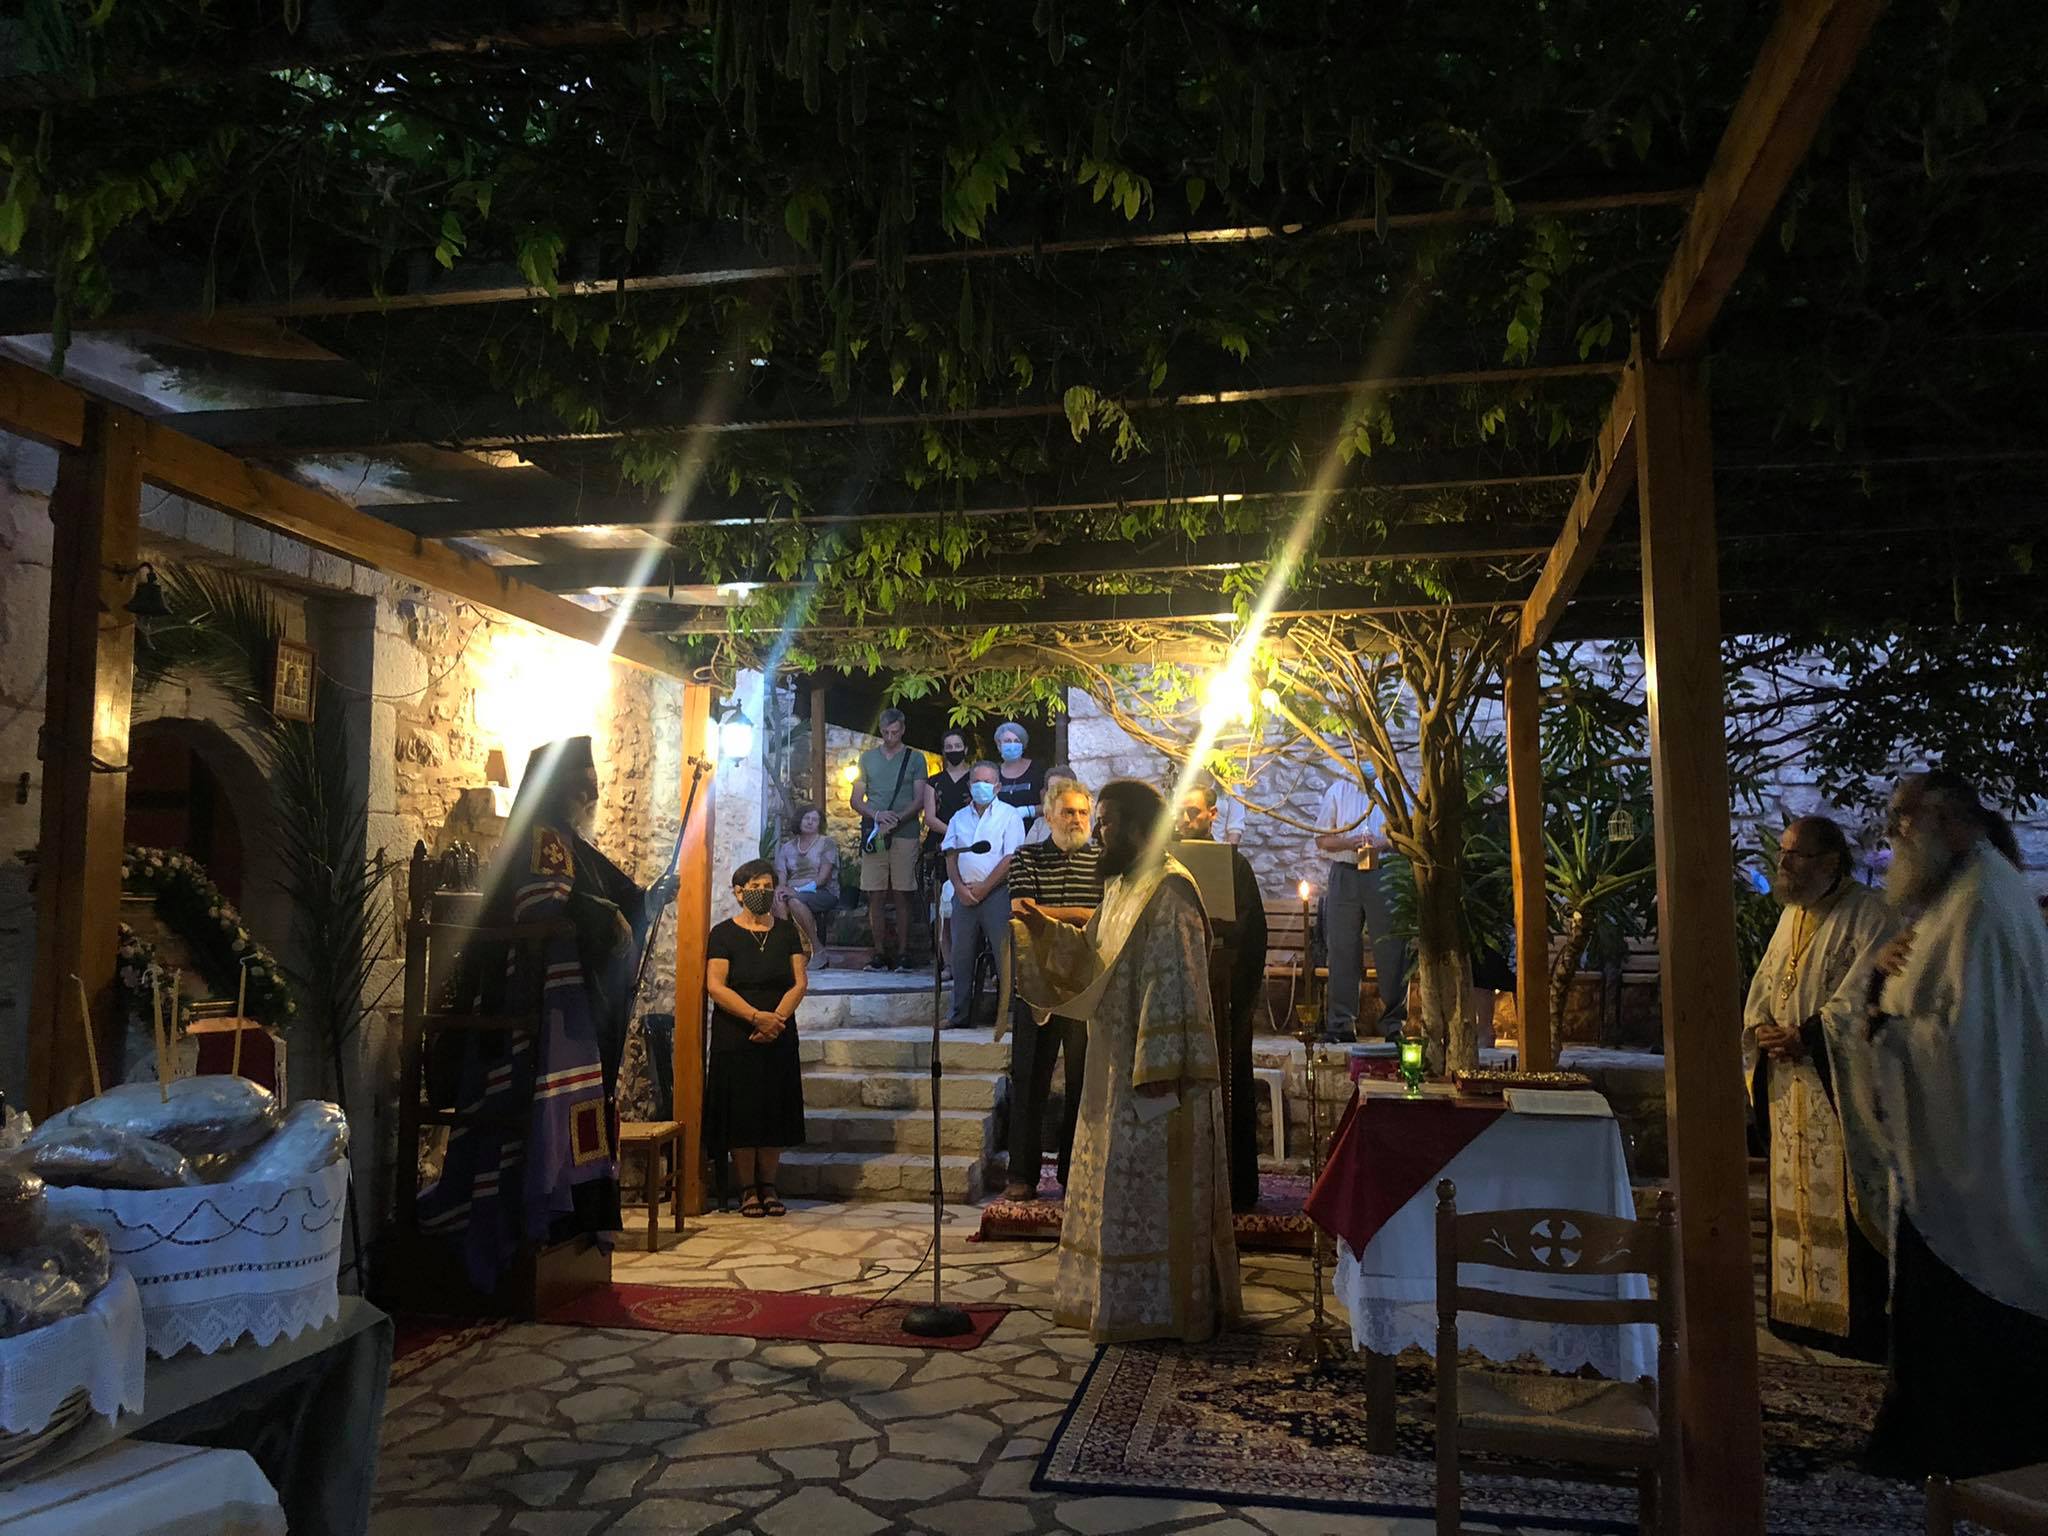 Η εορτή της Κοιμήσεως της Θεοτόκου στην Τρίπολη